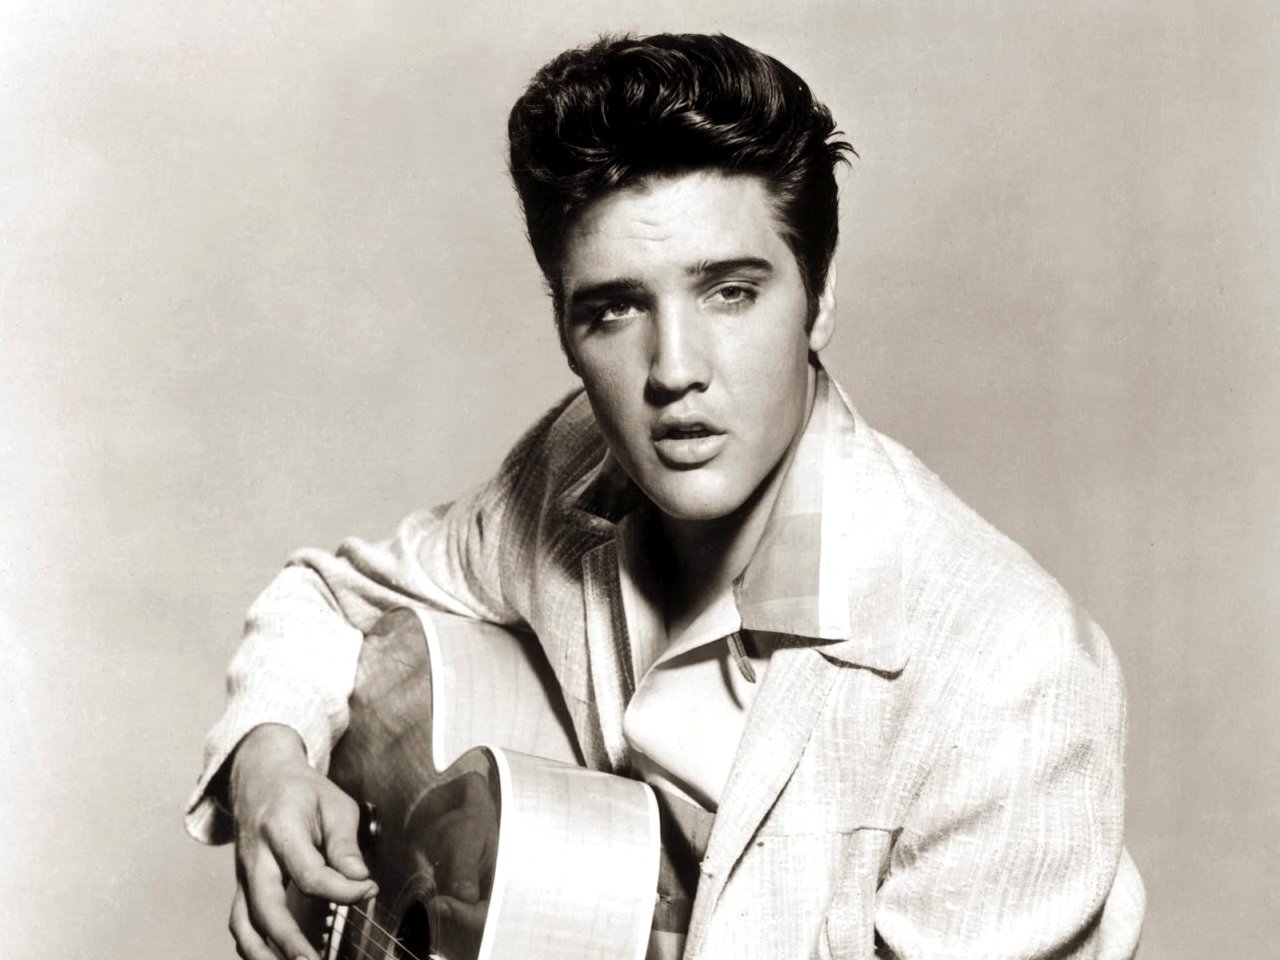 Elvis Presley Computer Wallpapers, Desktop Backgrounds | 1280x960 ...